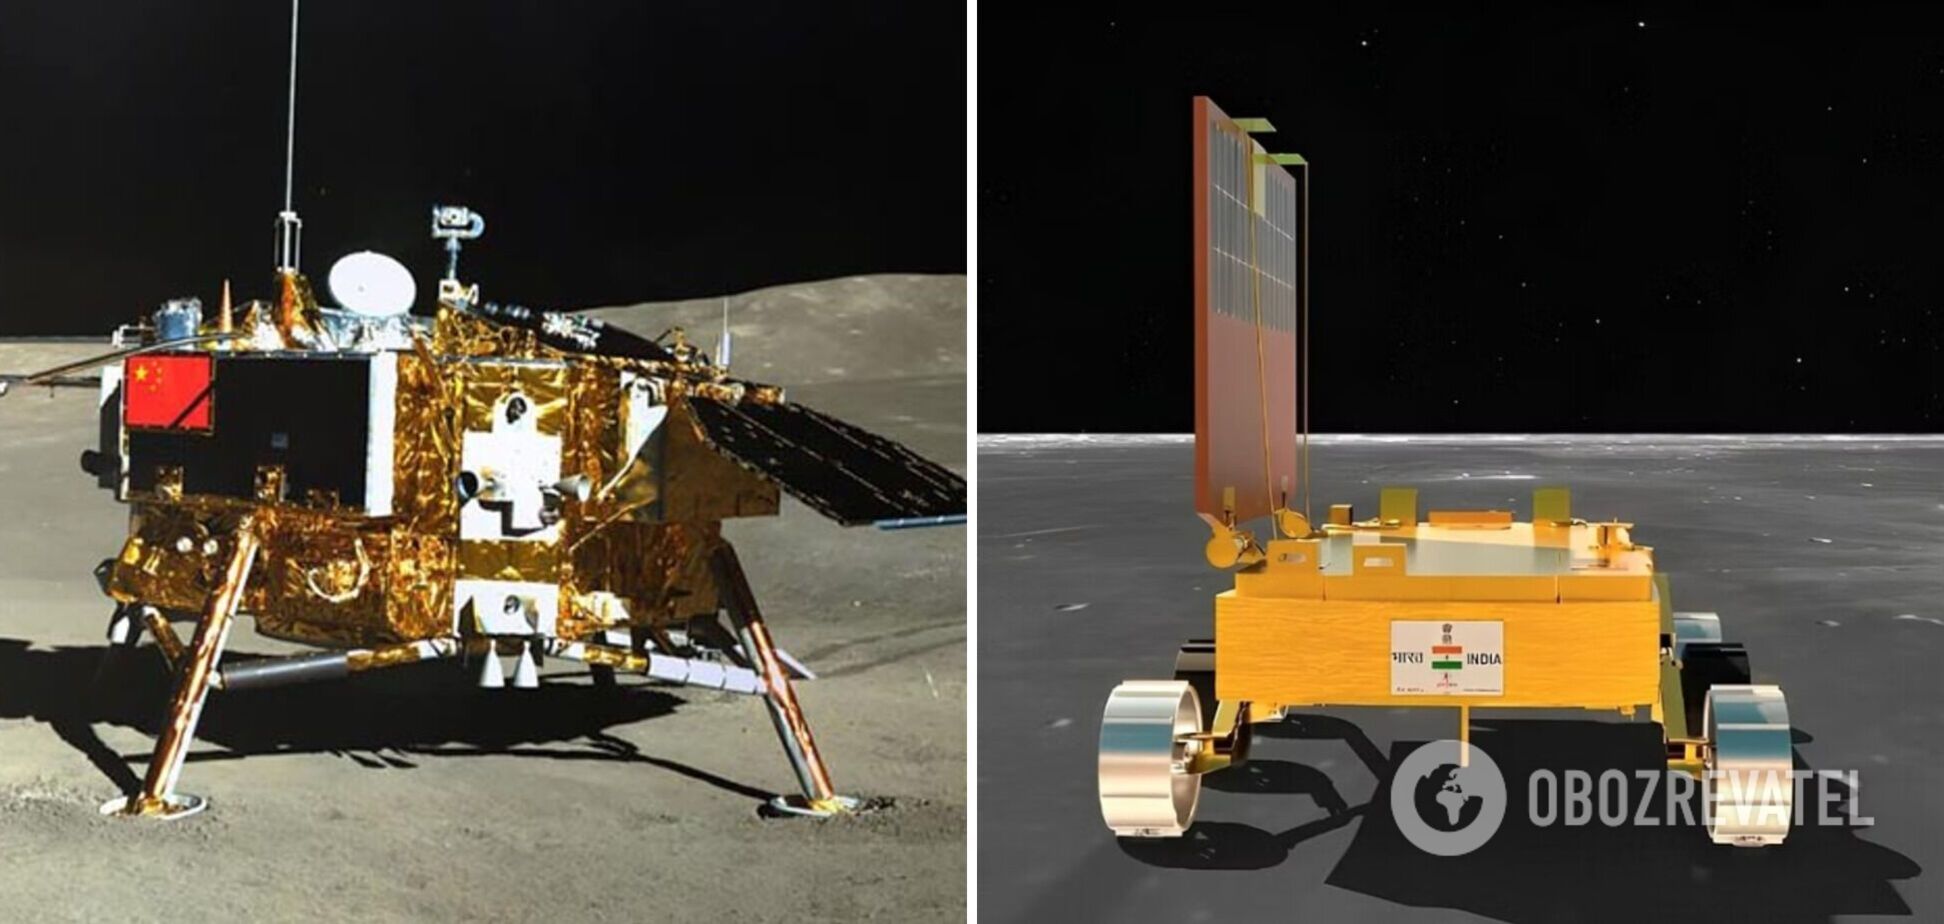 Індійський місяцехід 'Прагьян' знайшов на поверхні Місяця сірку: що це означає